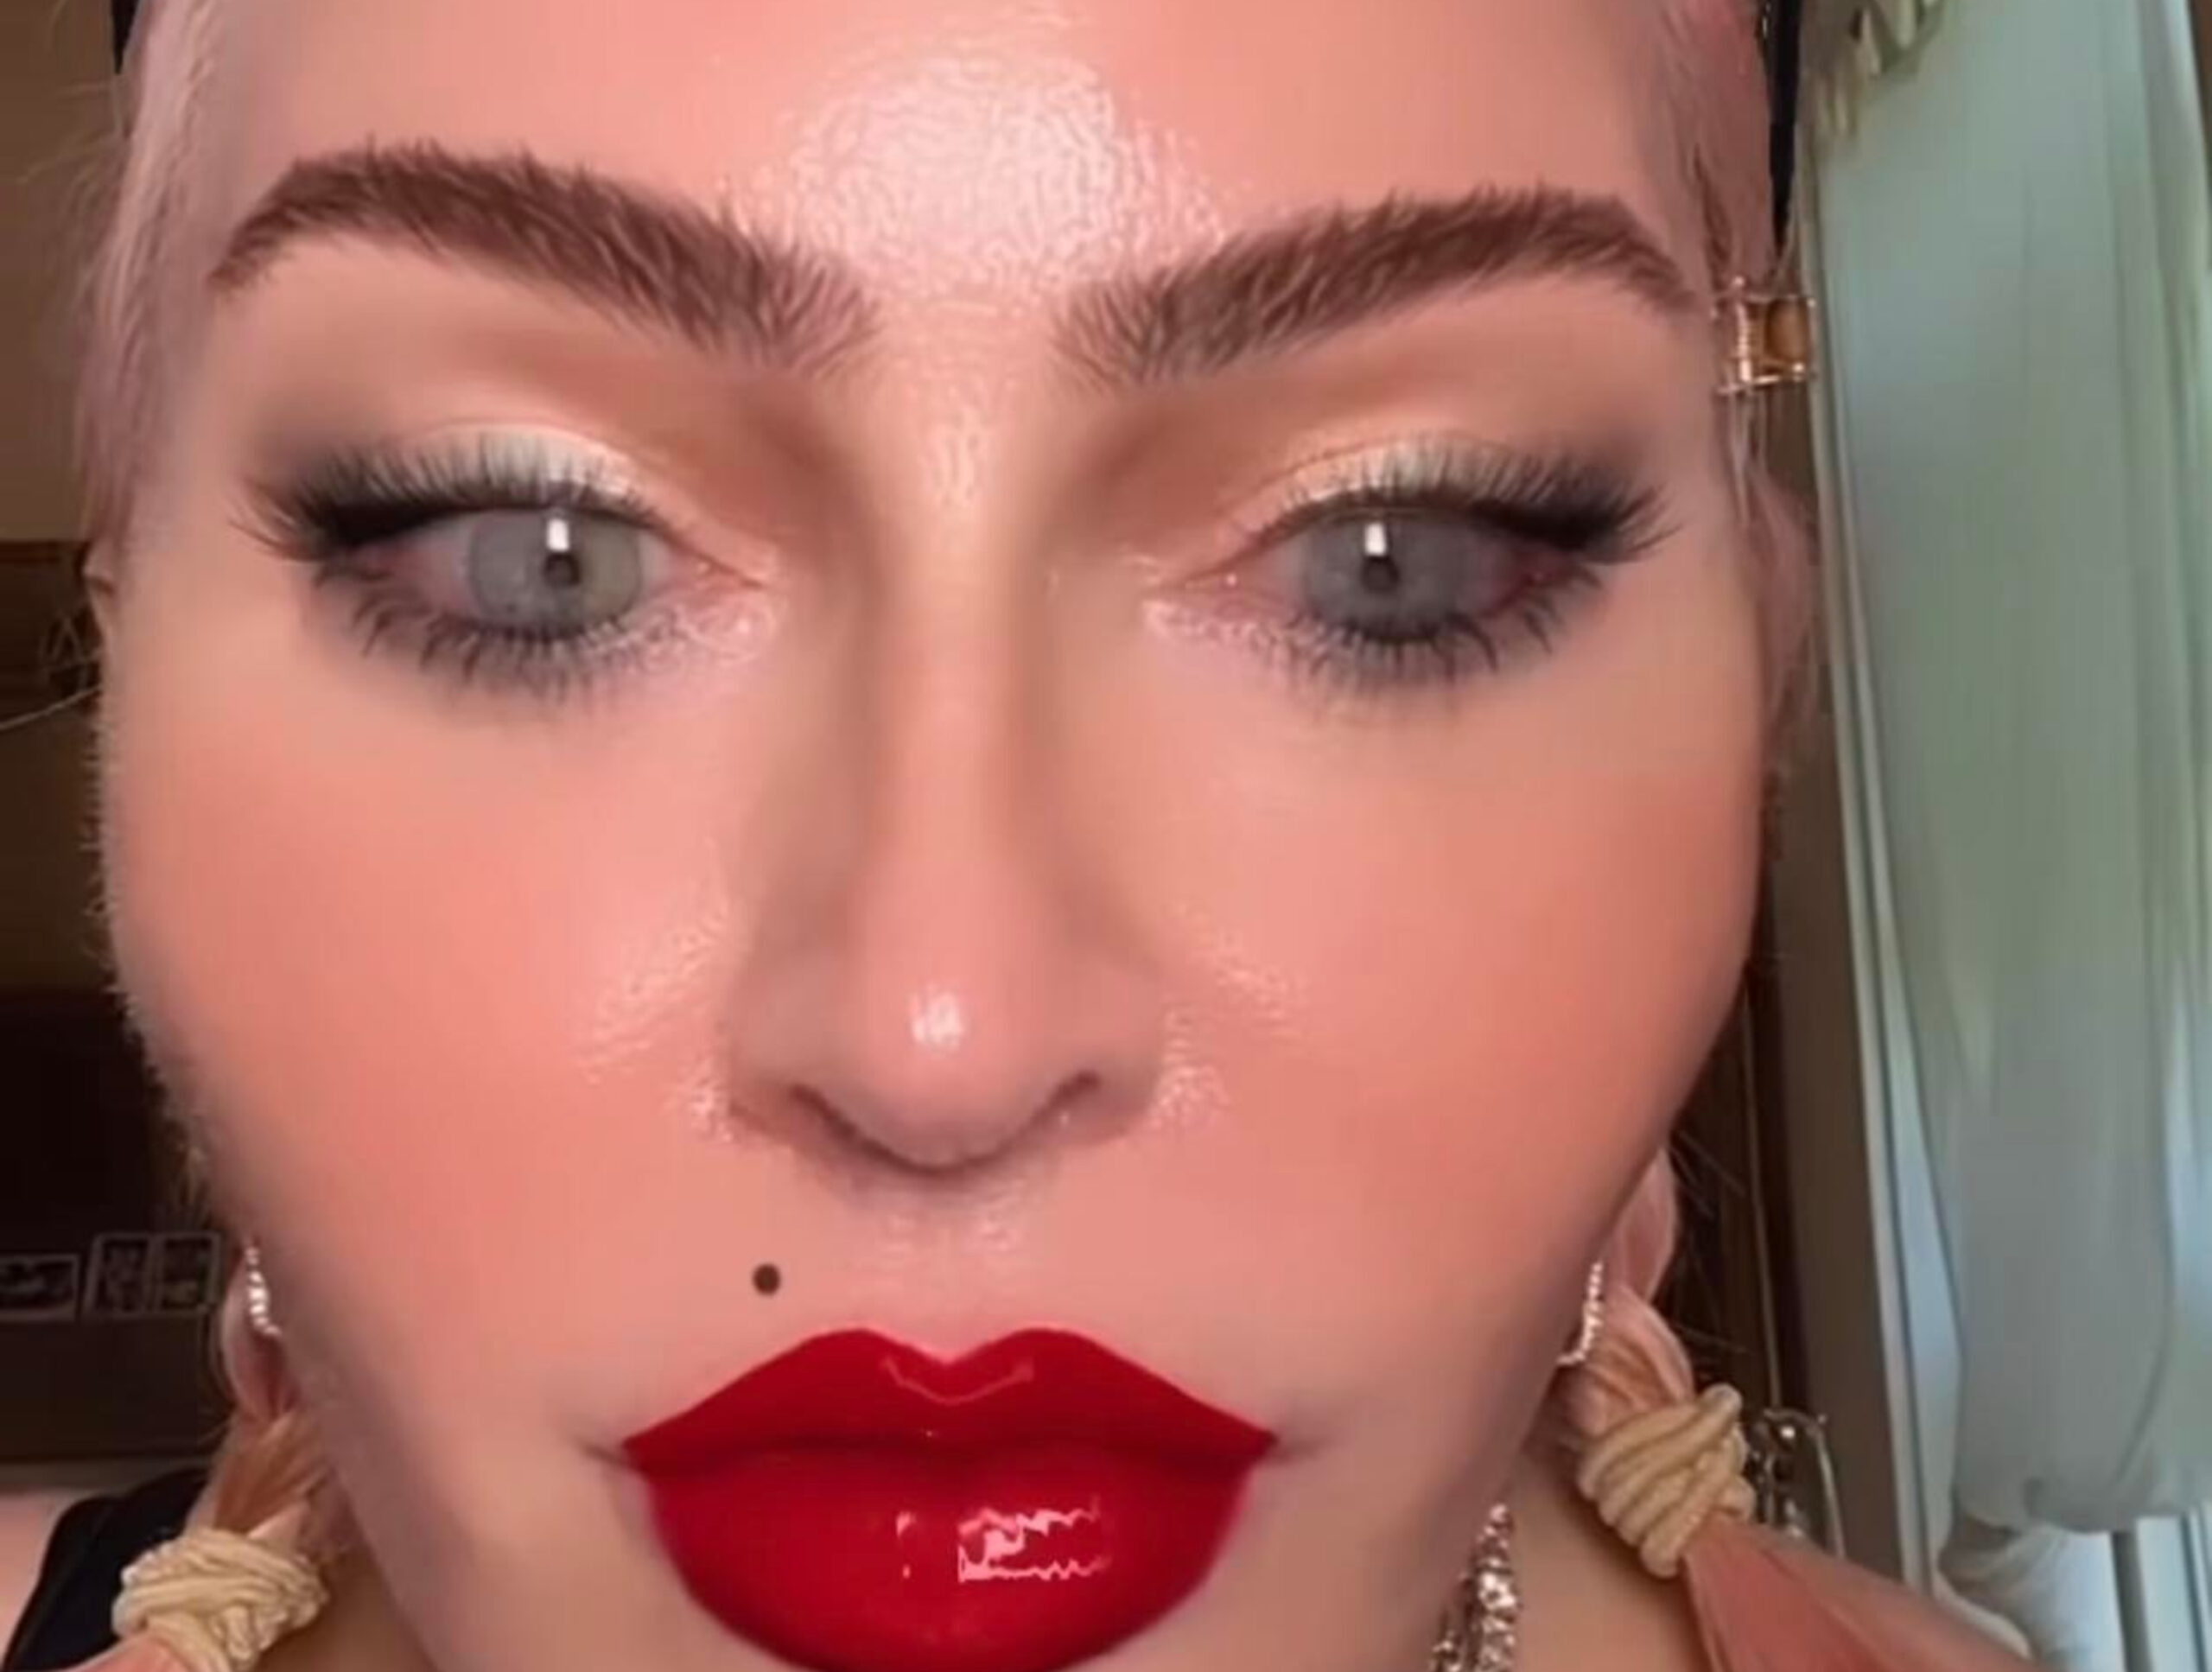 Τρομάζει η Μαντόνα στο νέο της βίντεο -Παραμορφωμένη από φίλτρο (VIDEO)